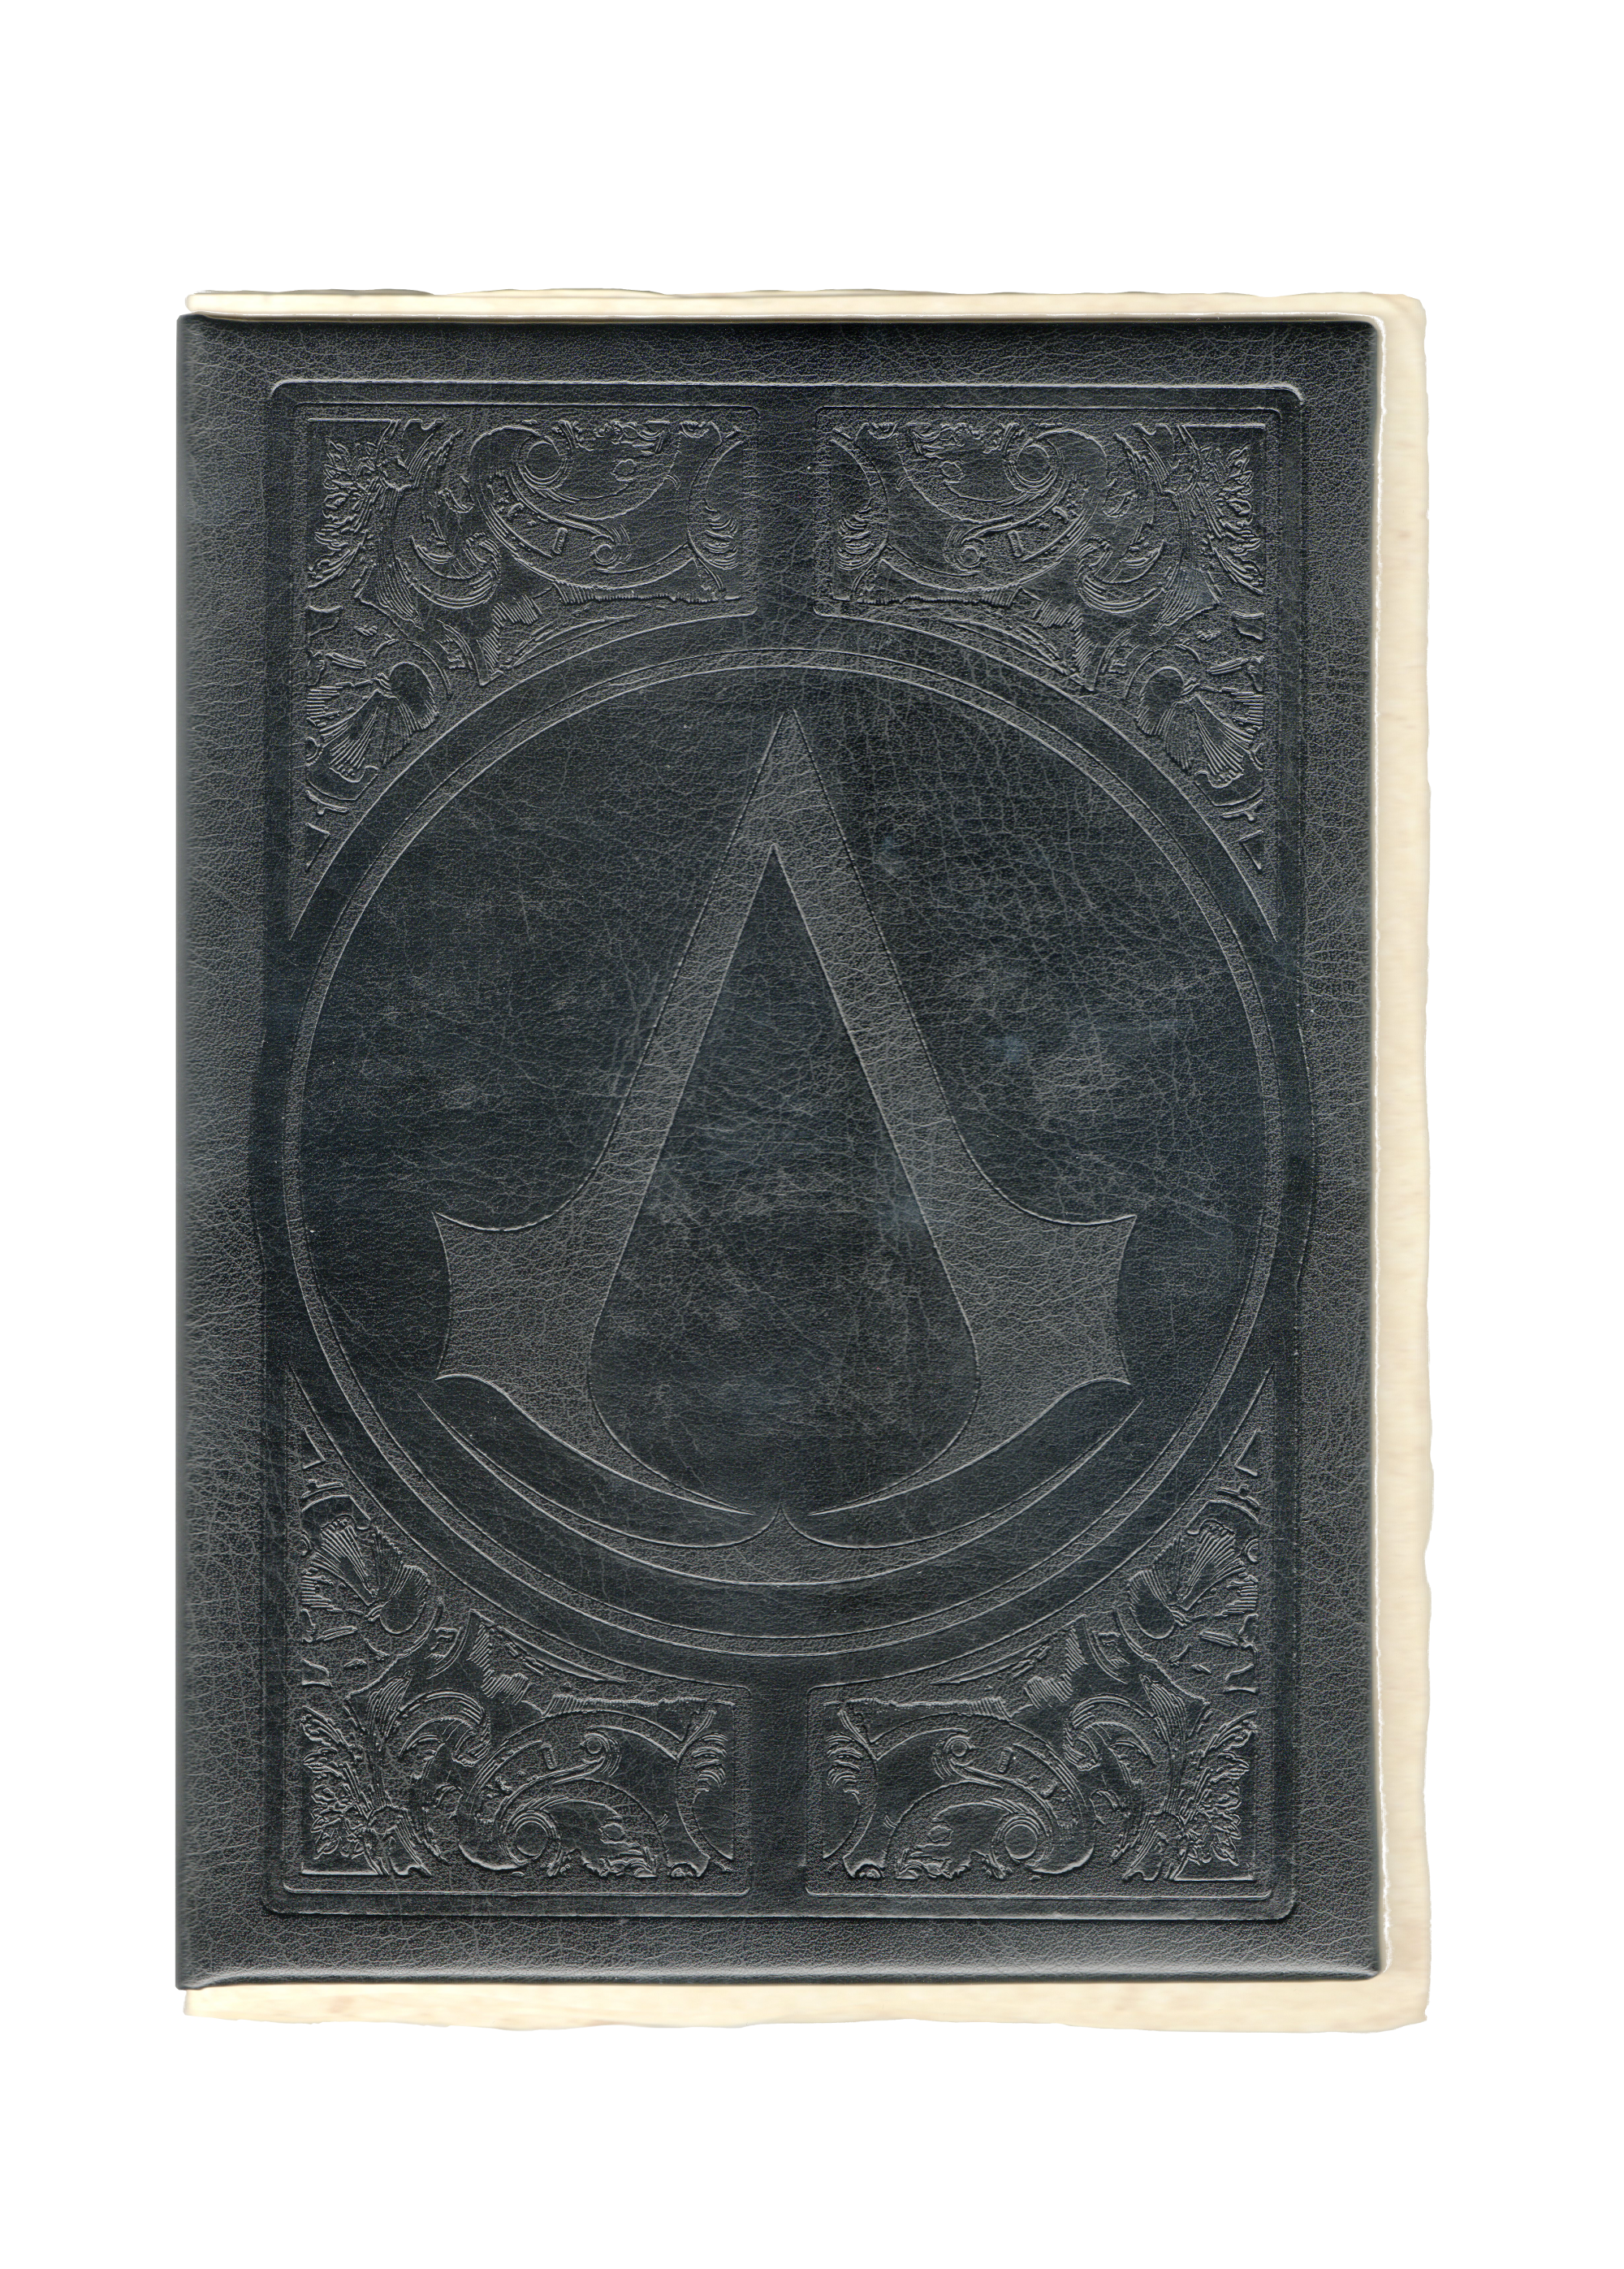 O Codex de Assassin's Creed 2 – Tradução páginas 2, 3, 10, 12, 15